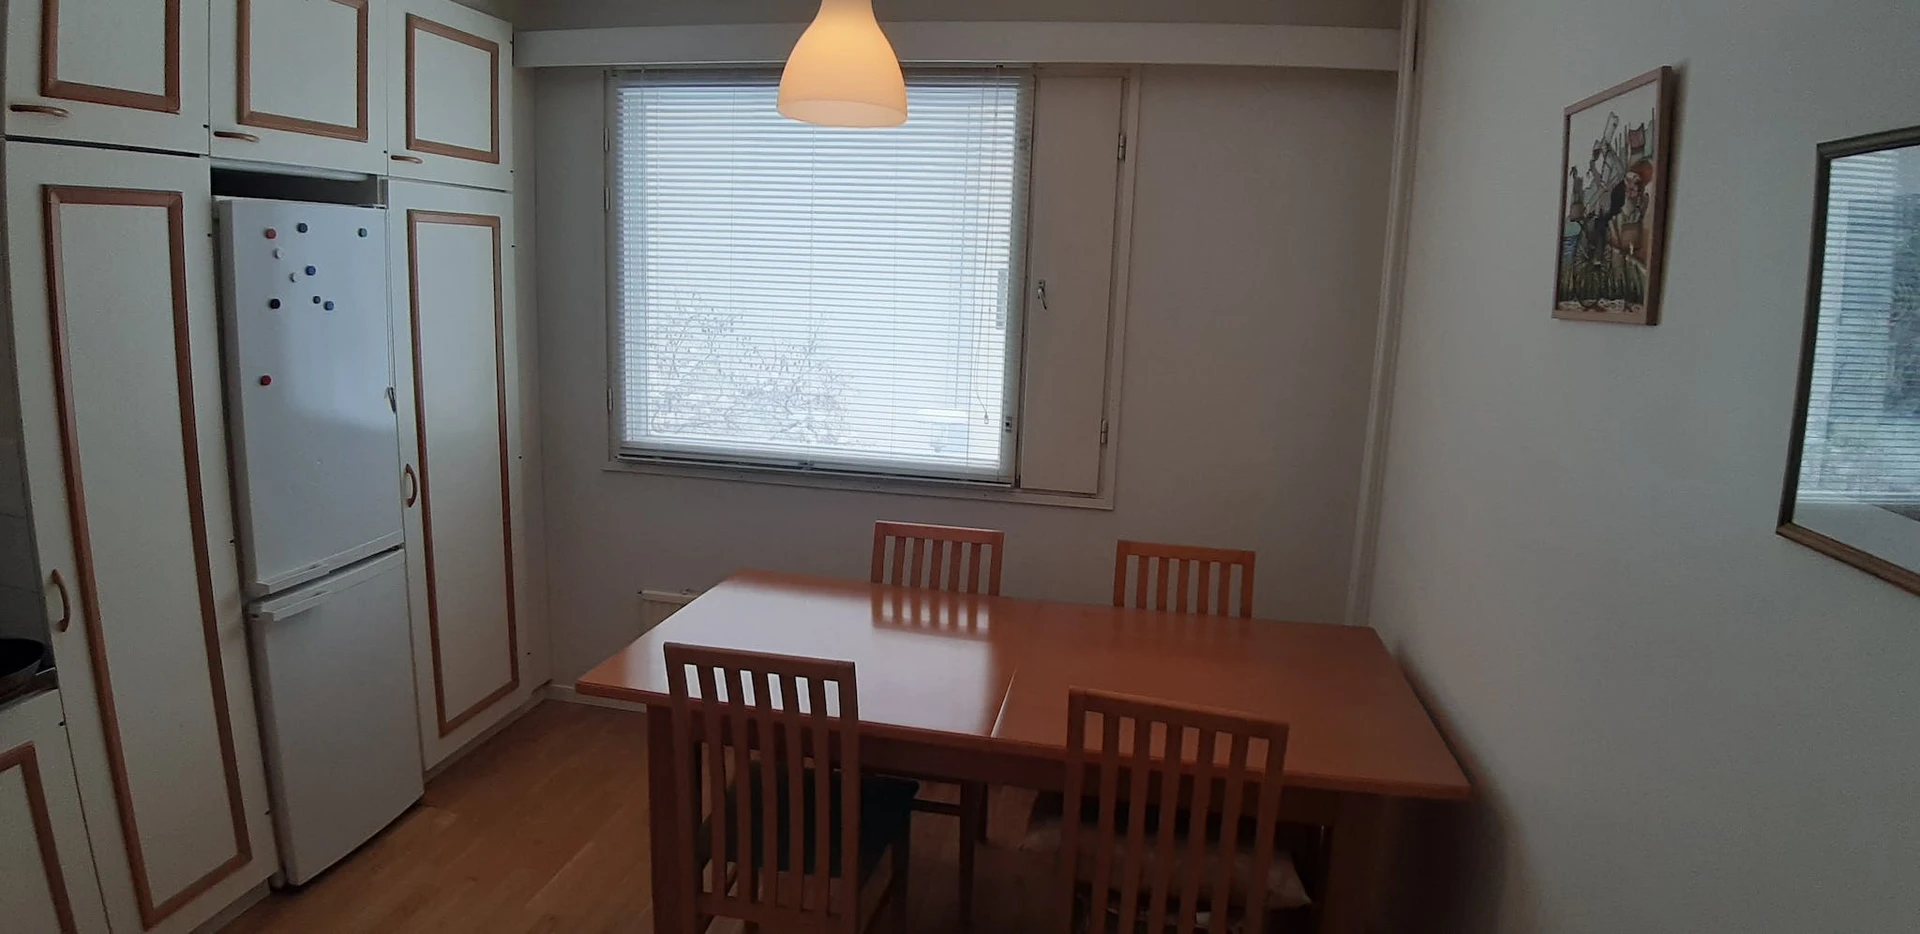 Cheap private room in Espoo